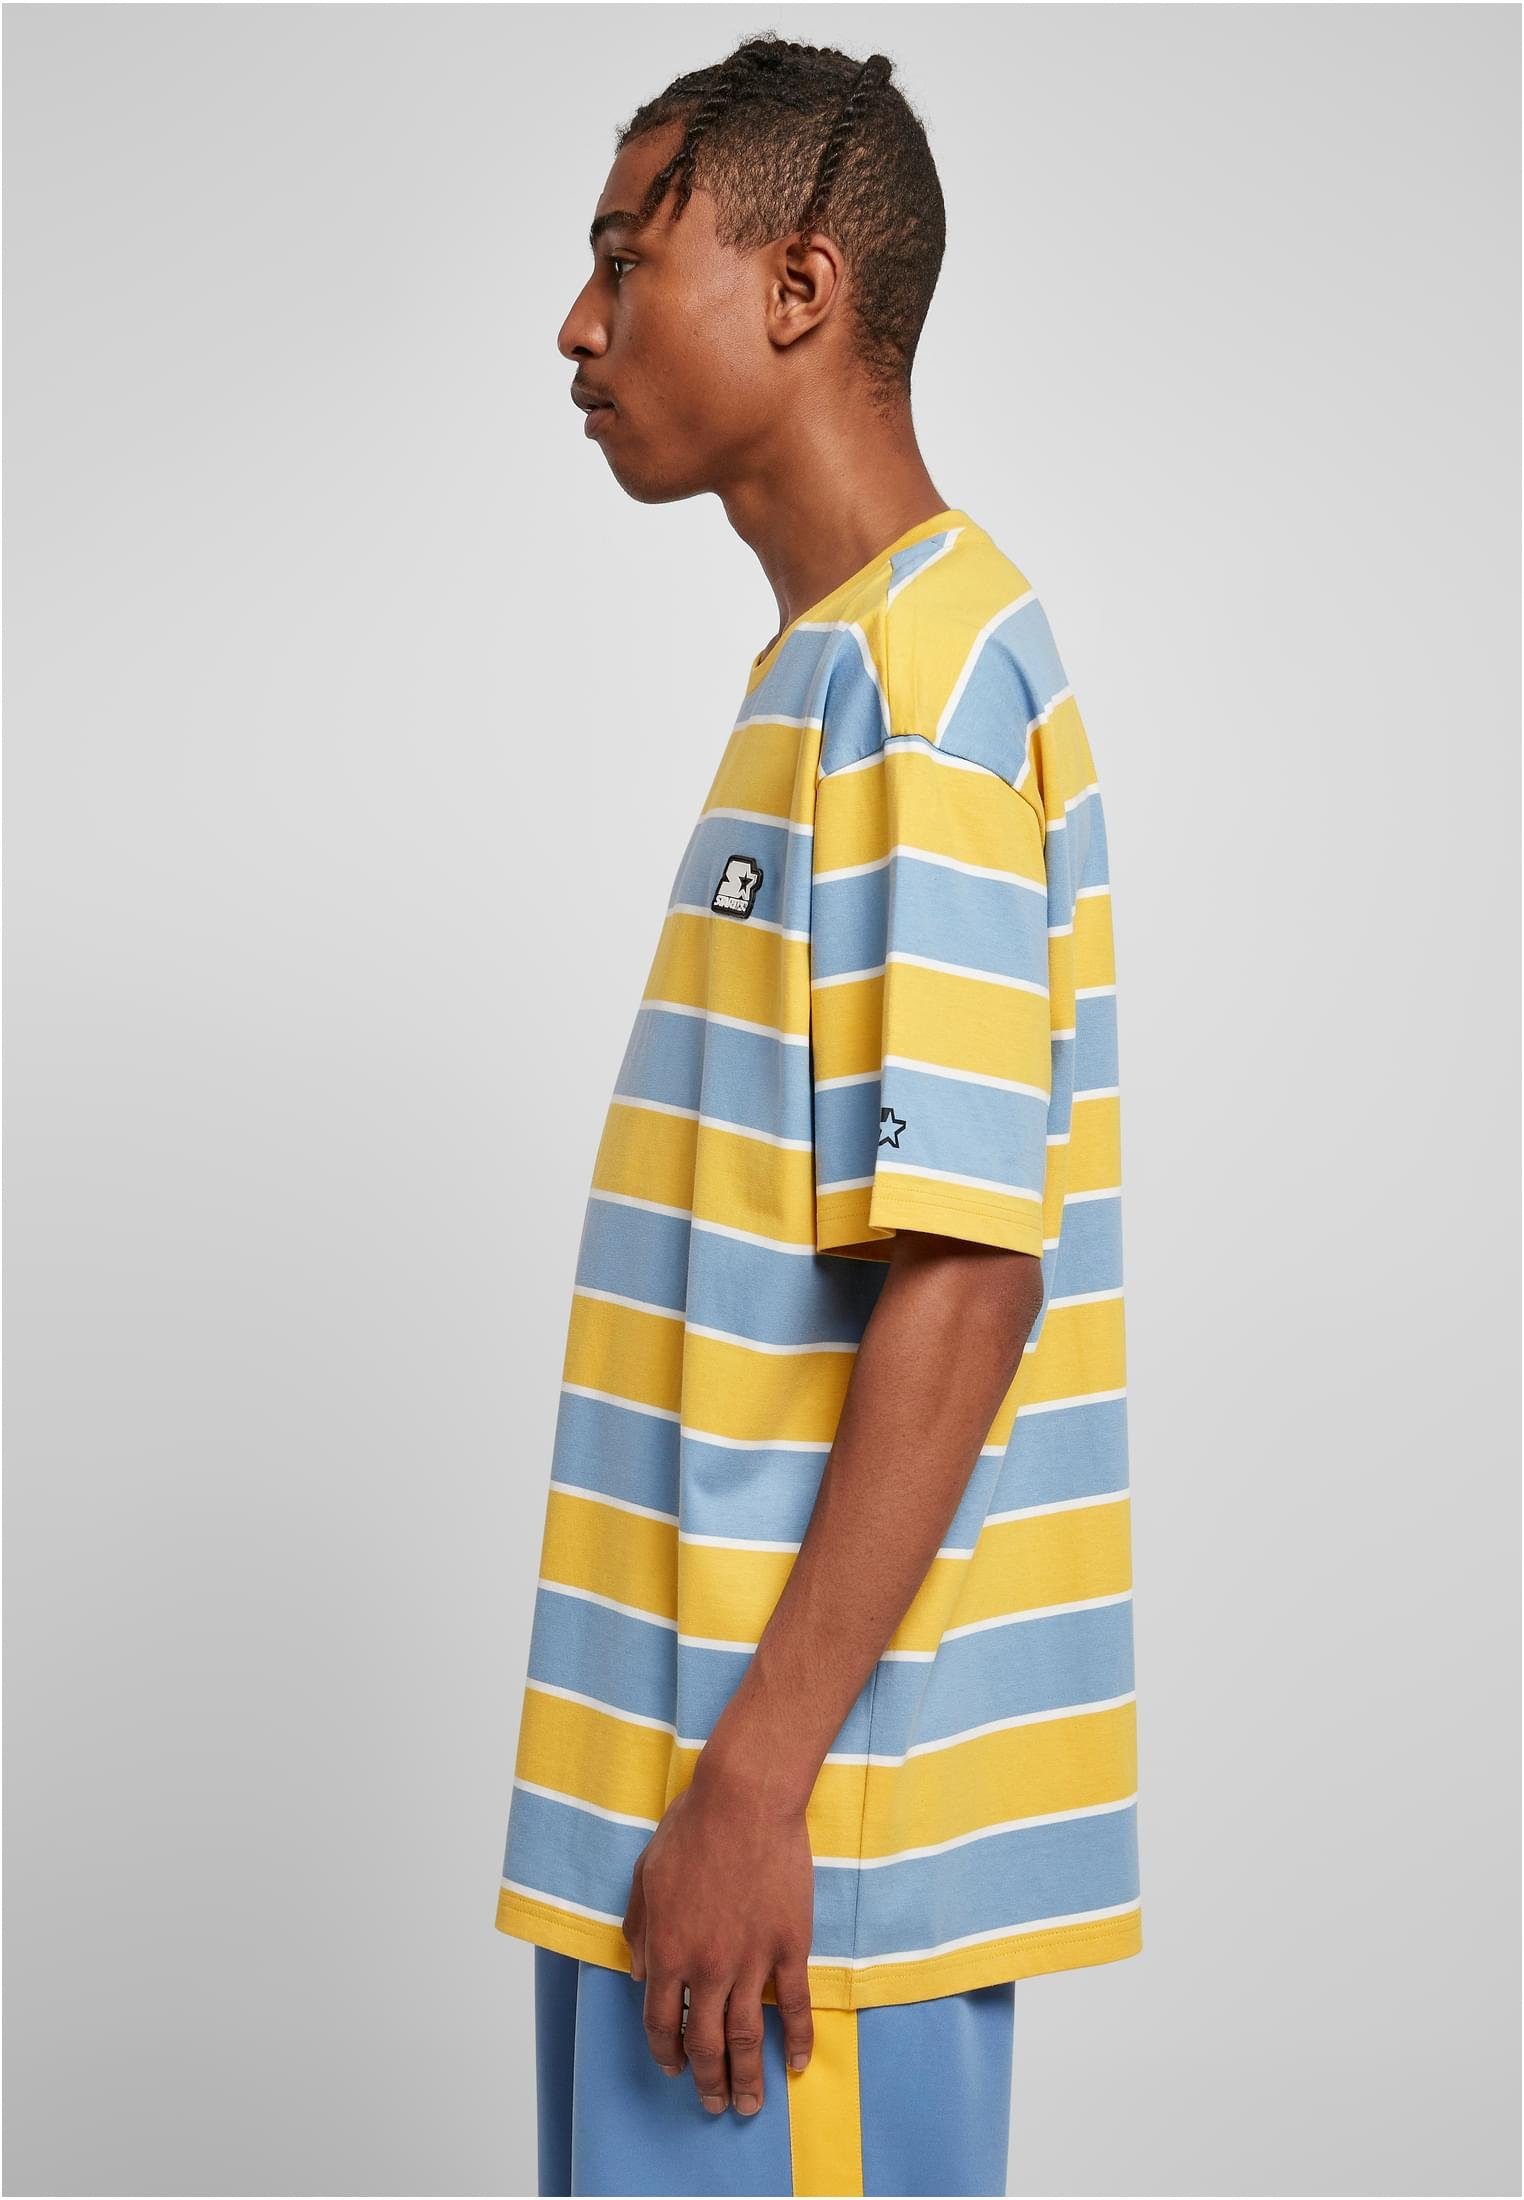 Stripes Herren Tee T-Shirt horizonblue/californiayellow/white Starter Starter (1-tlg) Block